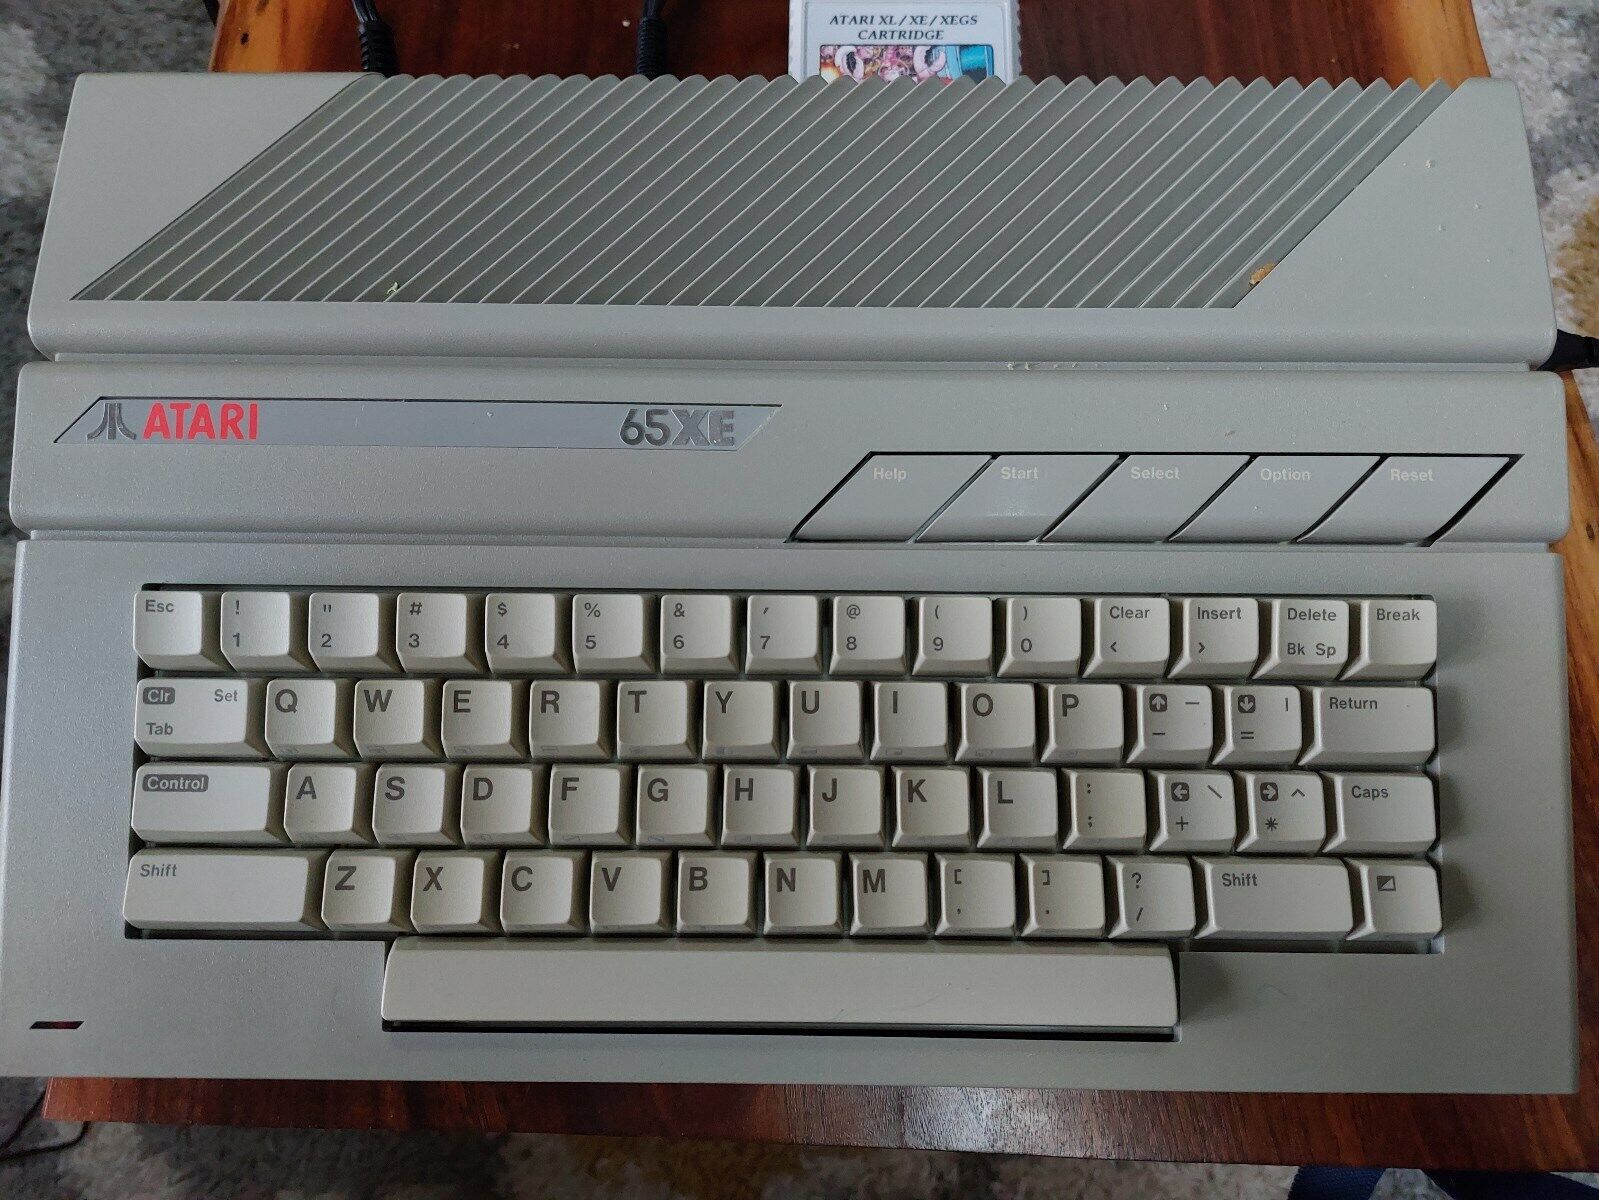 Atari 65 xe